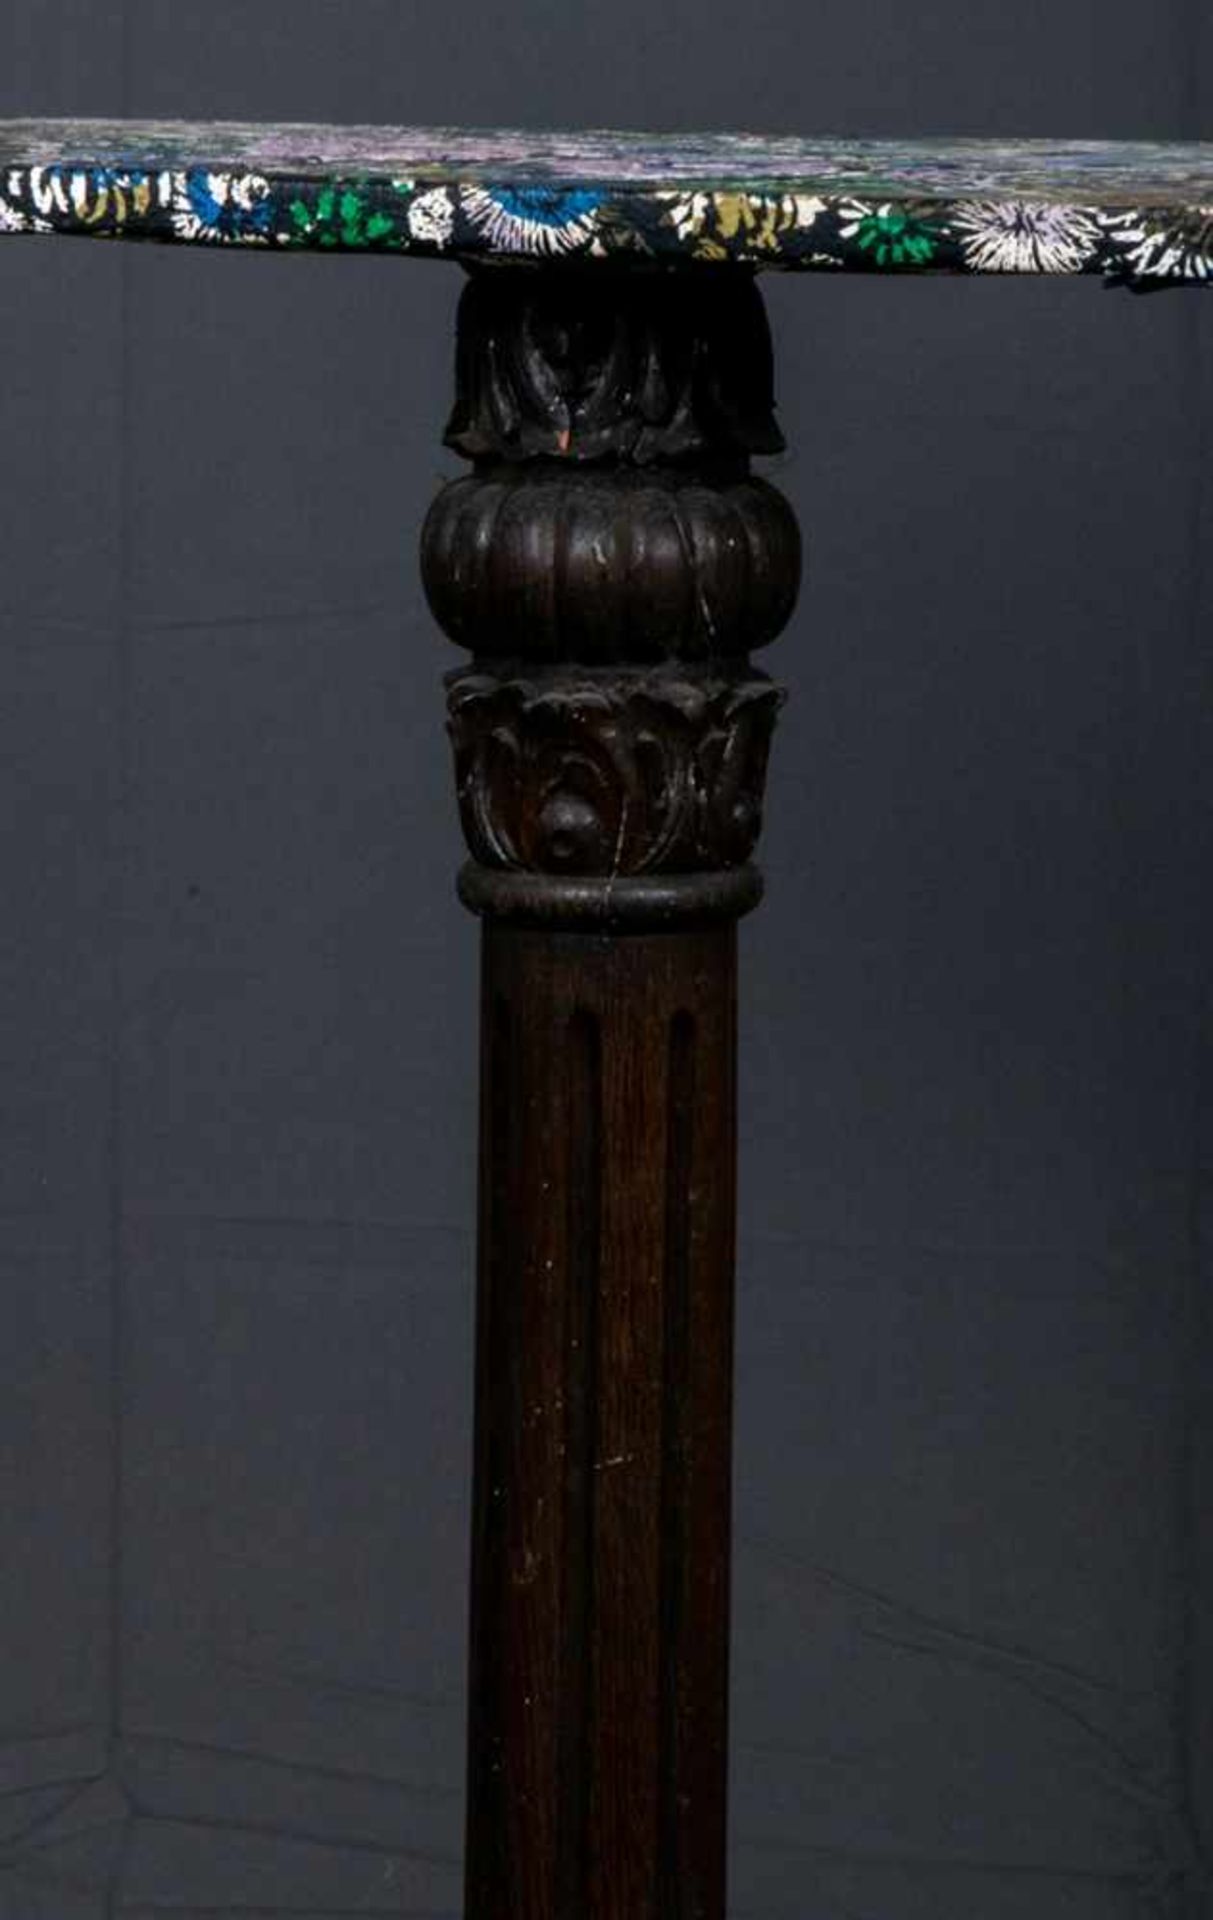 Säulenartiger Beistelltisch, z. B. für eine Büste o. ä., geschnitzter Holzfuß, dunkel gebeizt, - Bild 3 aus 5